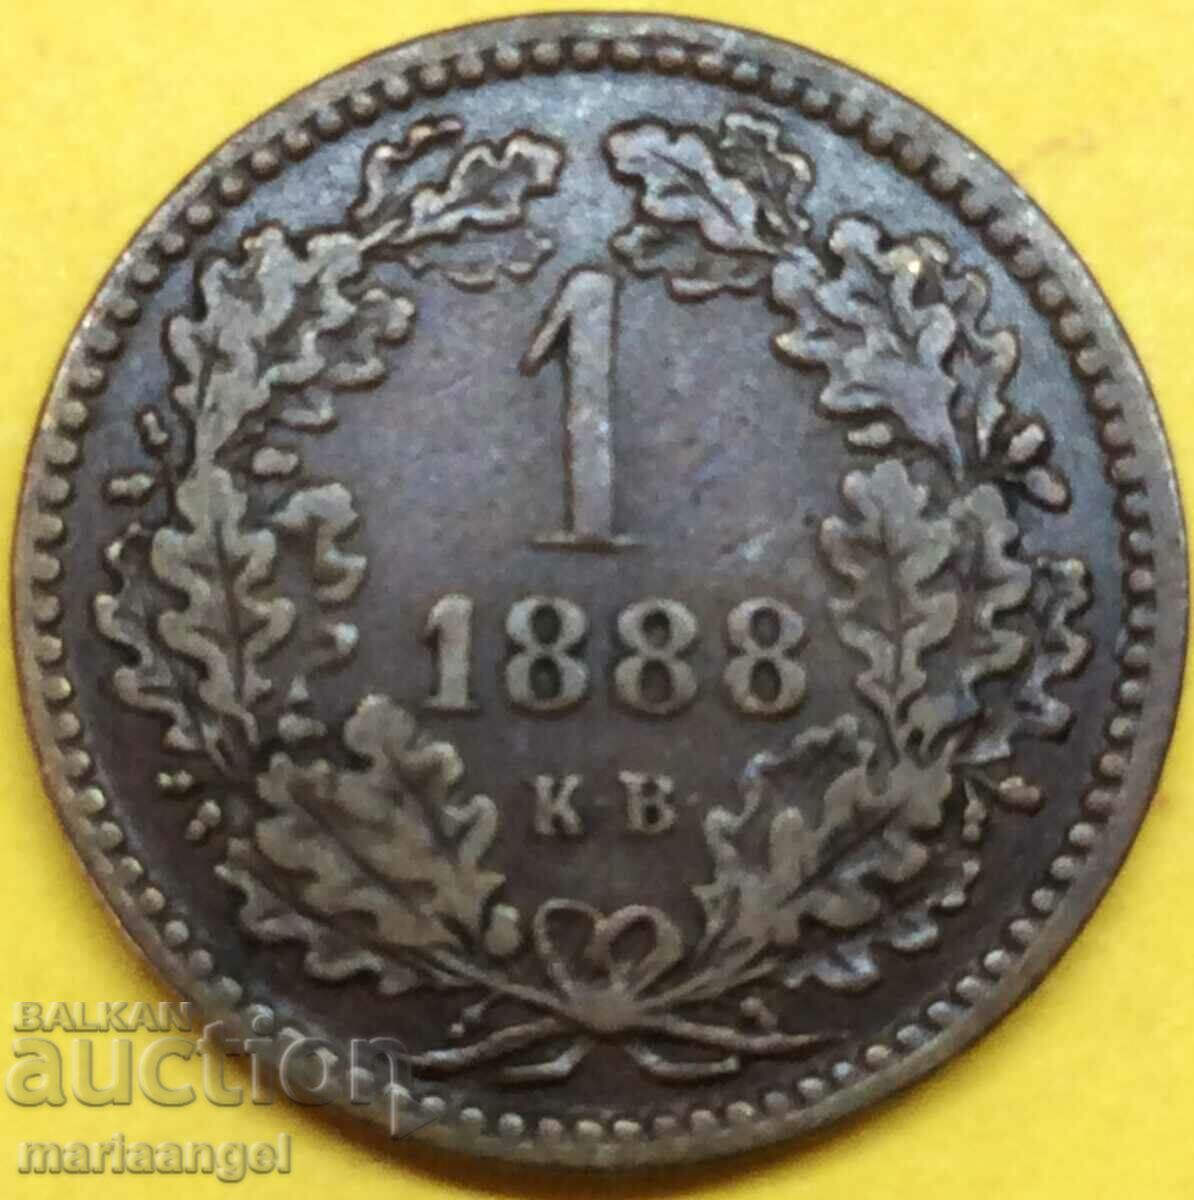 Ungaria 1 Kreuzer 1888 KV - an rar